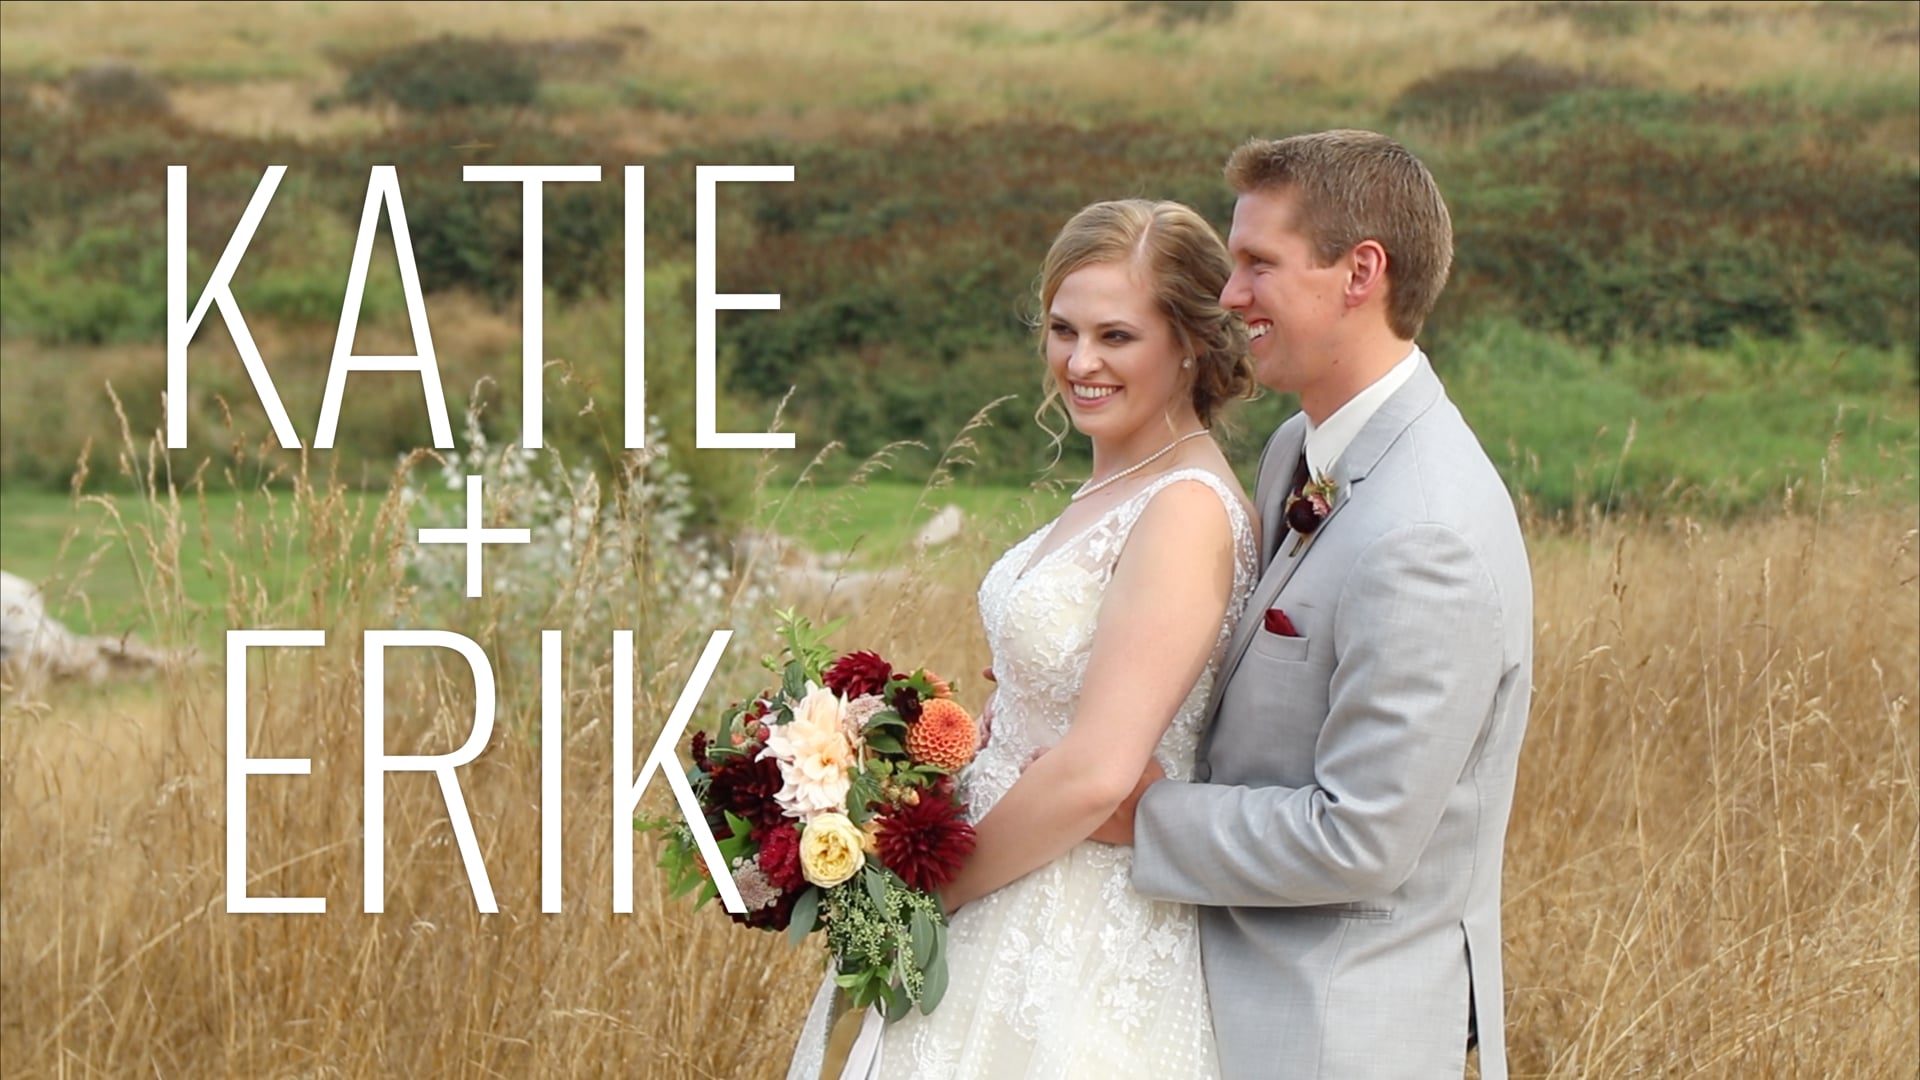 Katie + Erik // WEDDING HIGHLIGHTS